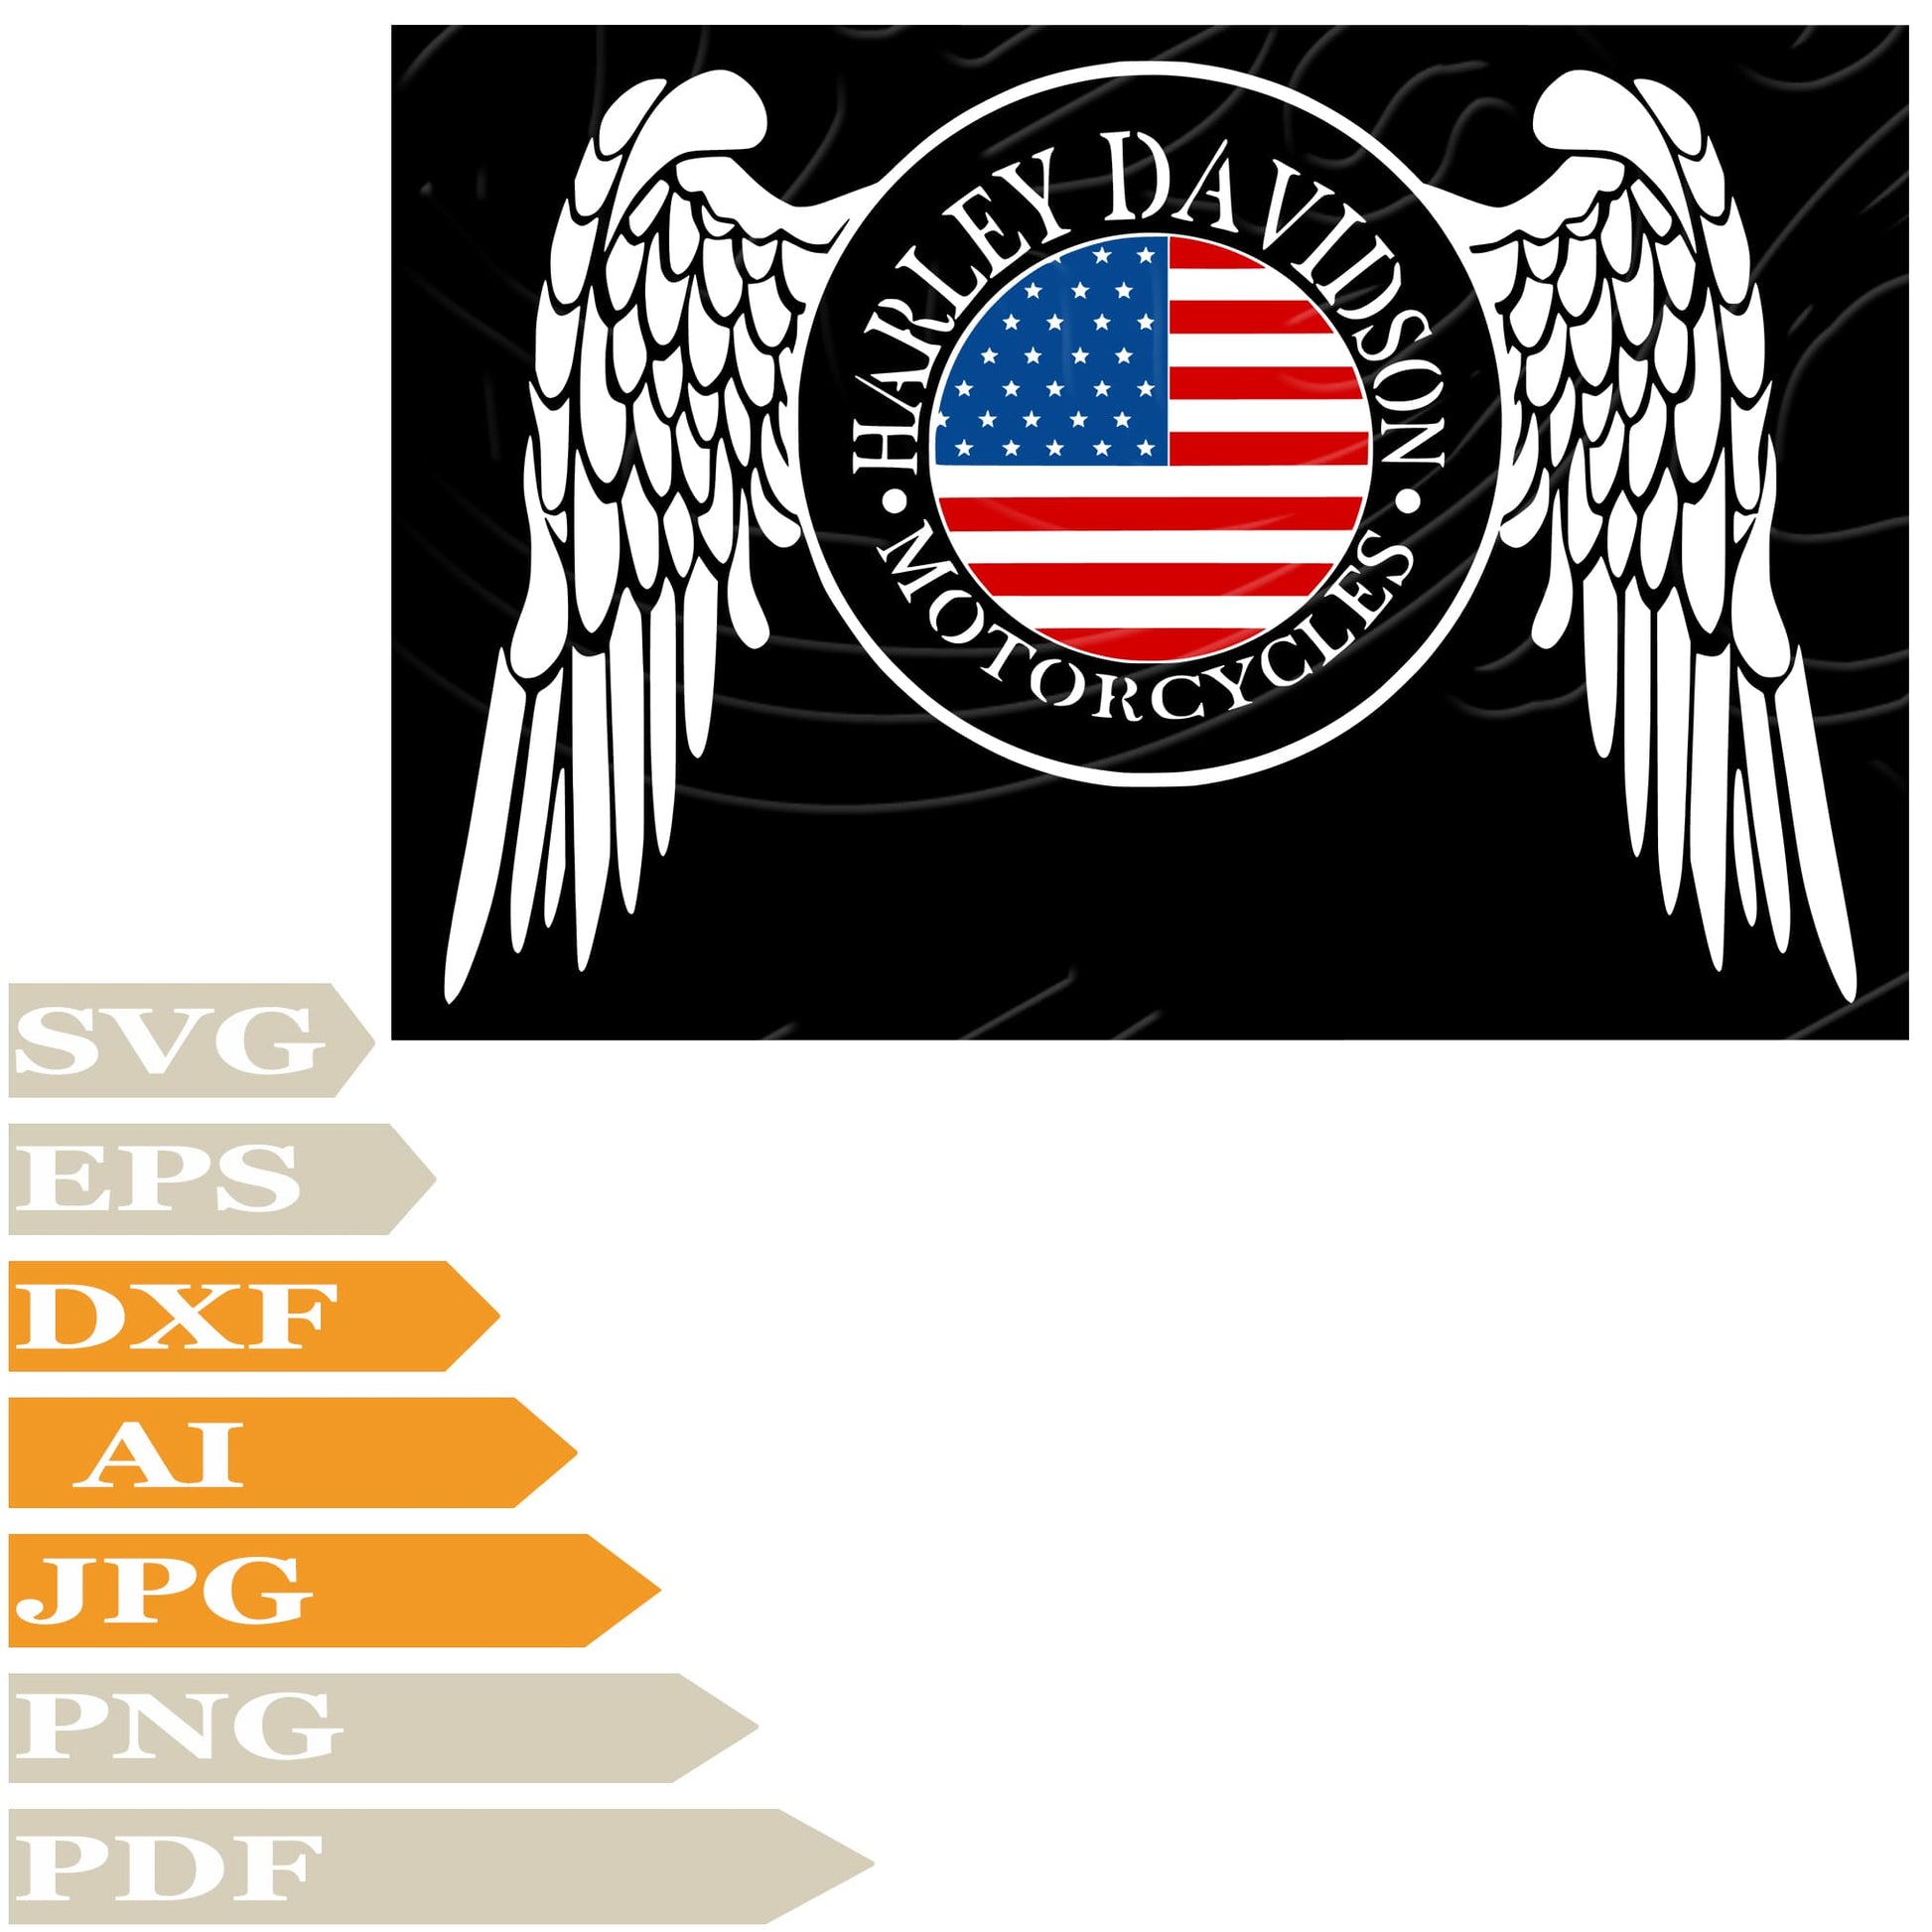 Harley Davidson SVG, Harley Davidson Logo SVG Design, Motorcycles Harley Davidson PNG, Usa Flag Harley Vector Graphics, Motorcycles Harley Davidson Logo For Cricut, Digital Instant Download, Clip Art, Cut File, T-Shirts, Silhouette